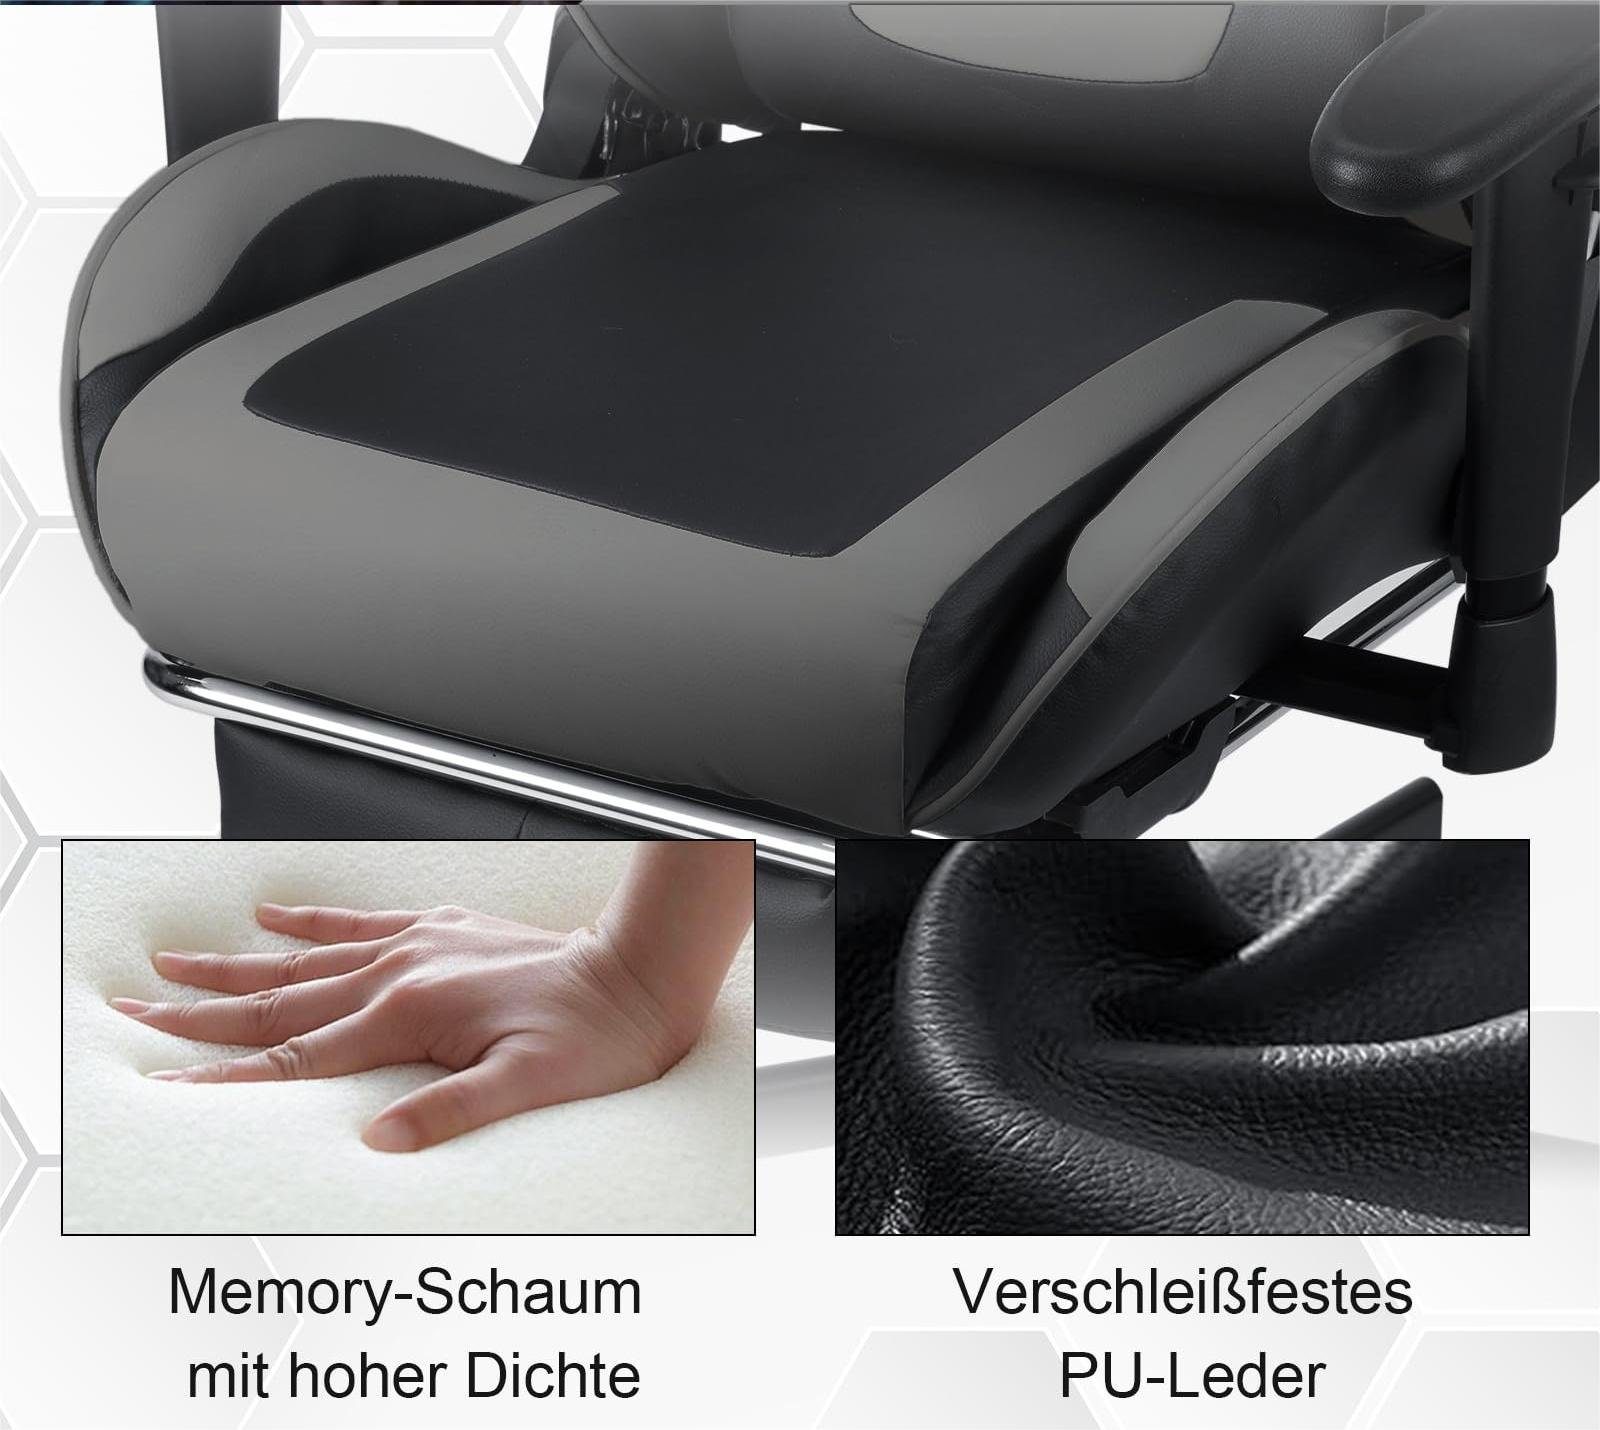 Lendenkissen Bürostuhl Gaming-Stuhl mit Nackenkissen, Kippfunktion, Fußstütze, Gaming-Stühle mit Gamer-Rennstuhl Rückenlehne 90°-150° (3D-Armlehnen, Fangqi ergonomische verstellbaren verstellbar, Armlehnen),